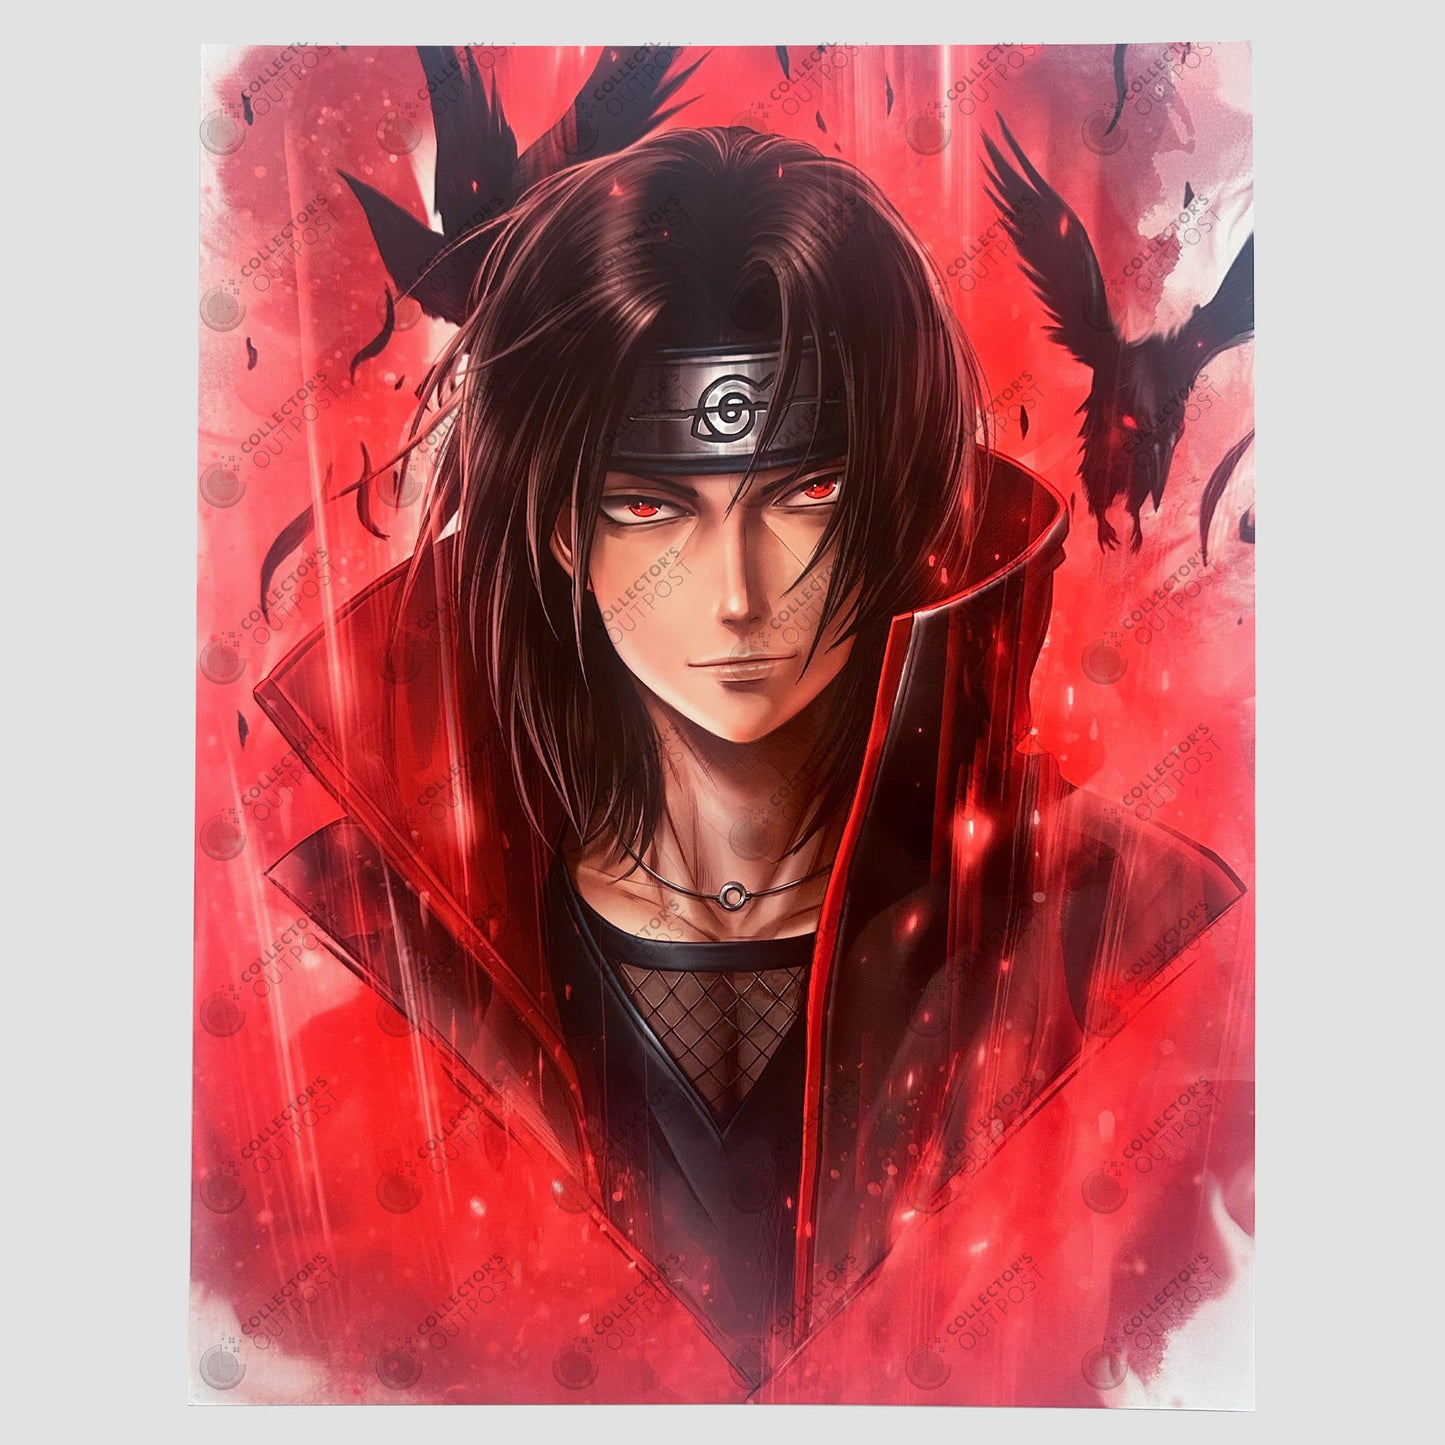 Itachi "Prince of Crows" (Naruto Shippuden) Legacy Premium Art Print